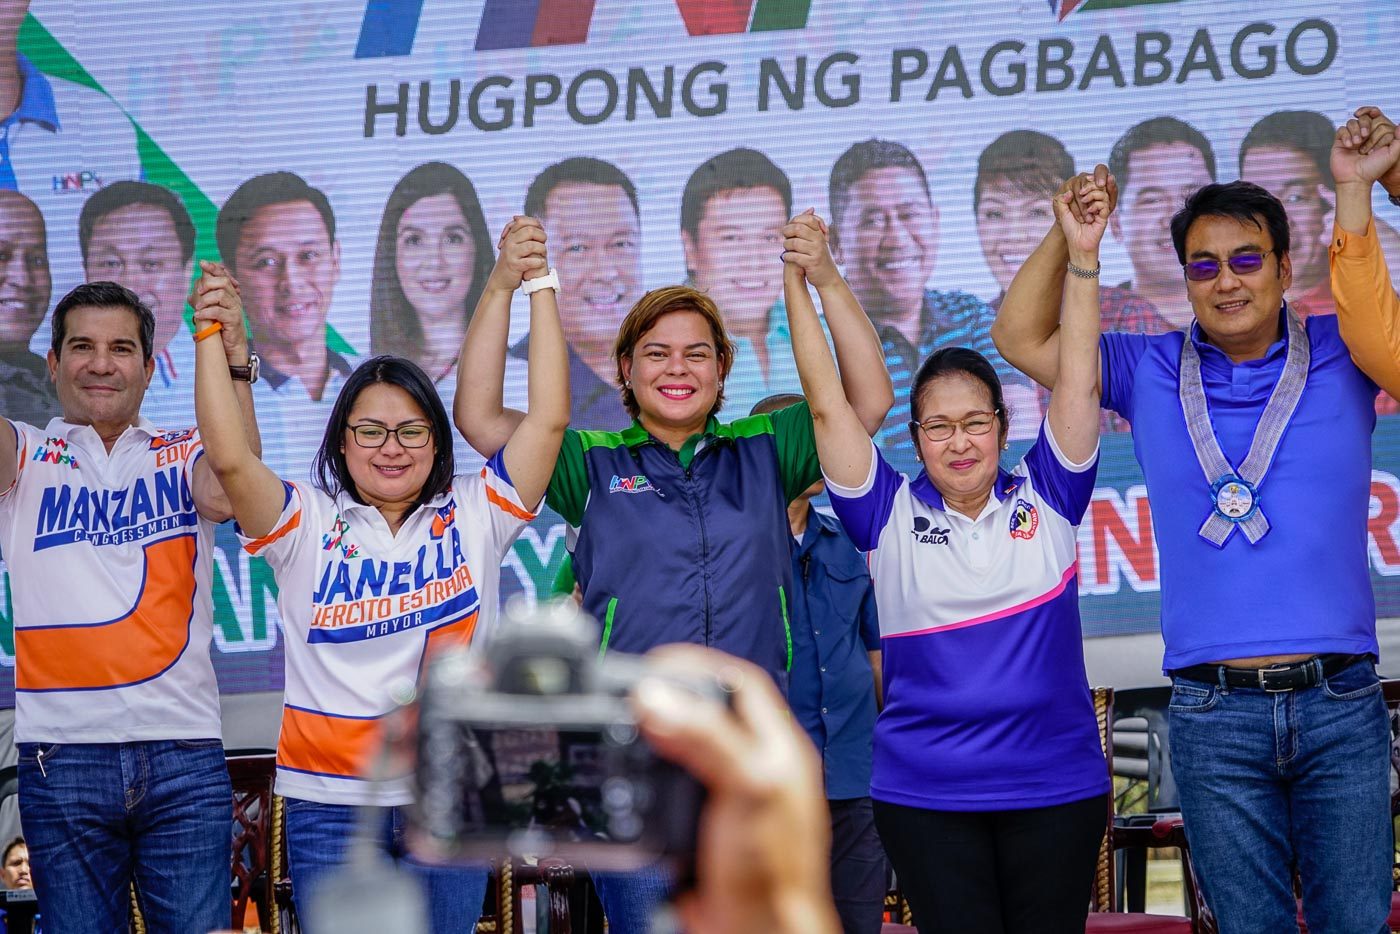 Sara Duterte endorses San Juan mayoral bid of Janella Ejercito